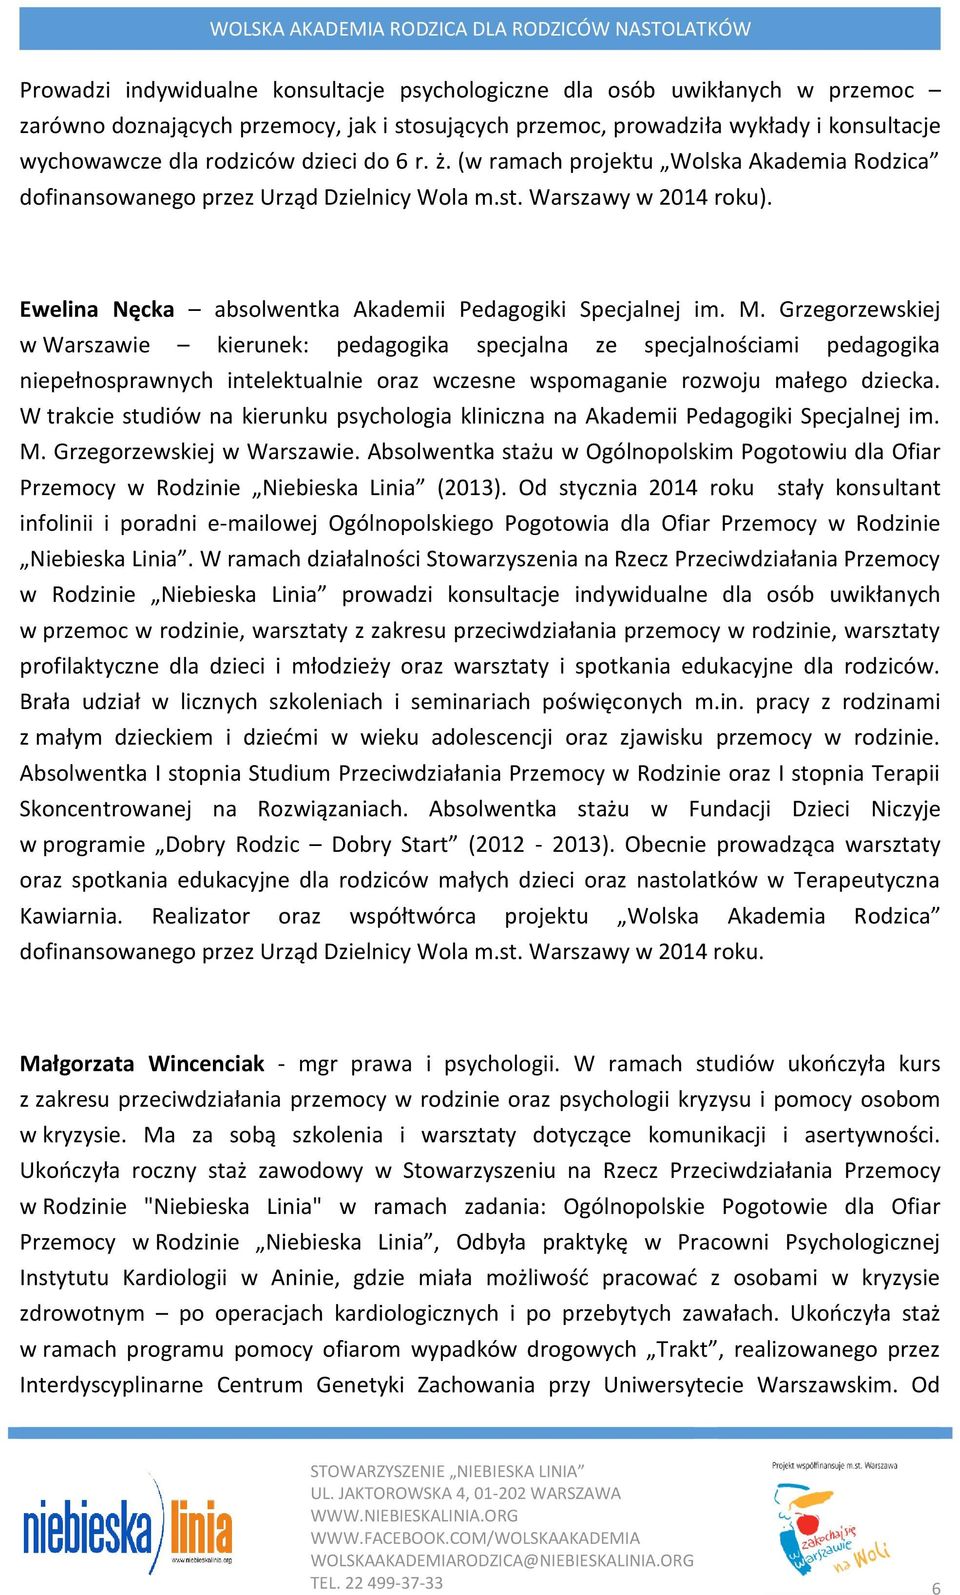 Grzegorzewskiej w Warszawie kierunek: pedagogika specjalna ze specjalnościami pedagogika niepełnosprawnych intelektualnie oraz wczesne wspomaganie rozwoju małego dziecka.